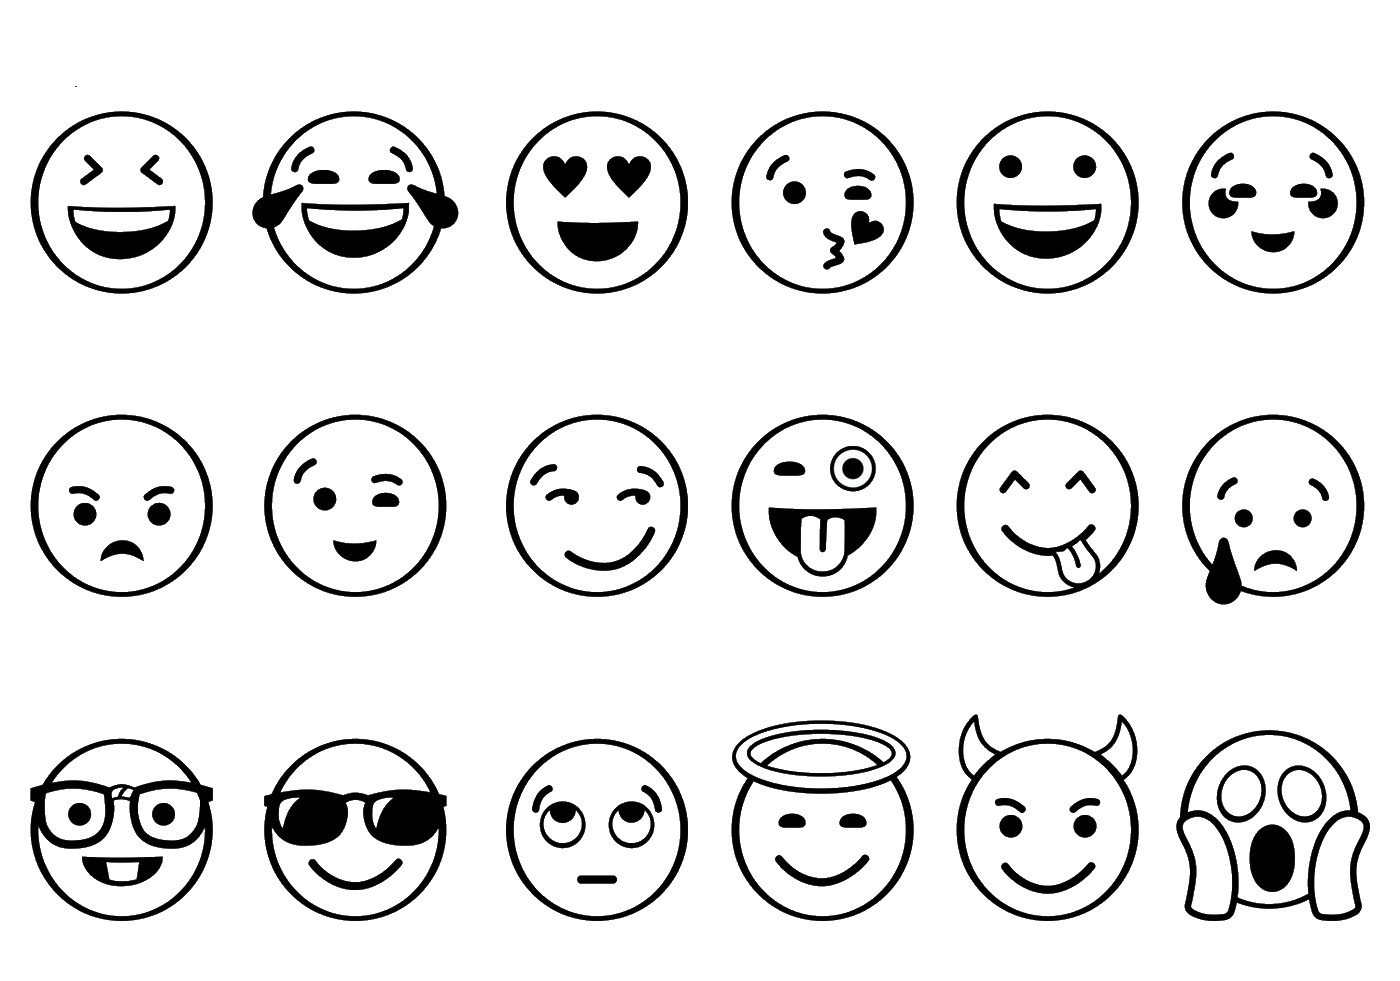 Cómo dibujar imágenes de emojis